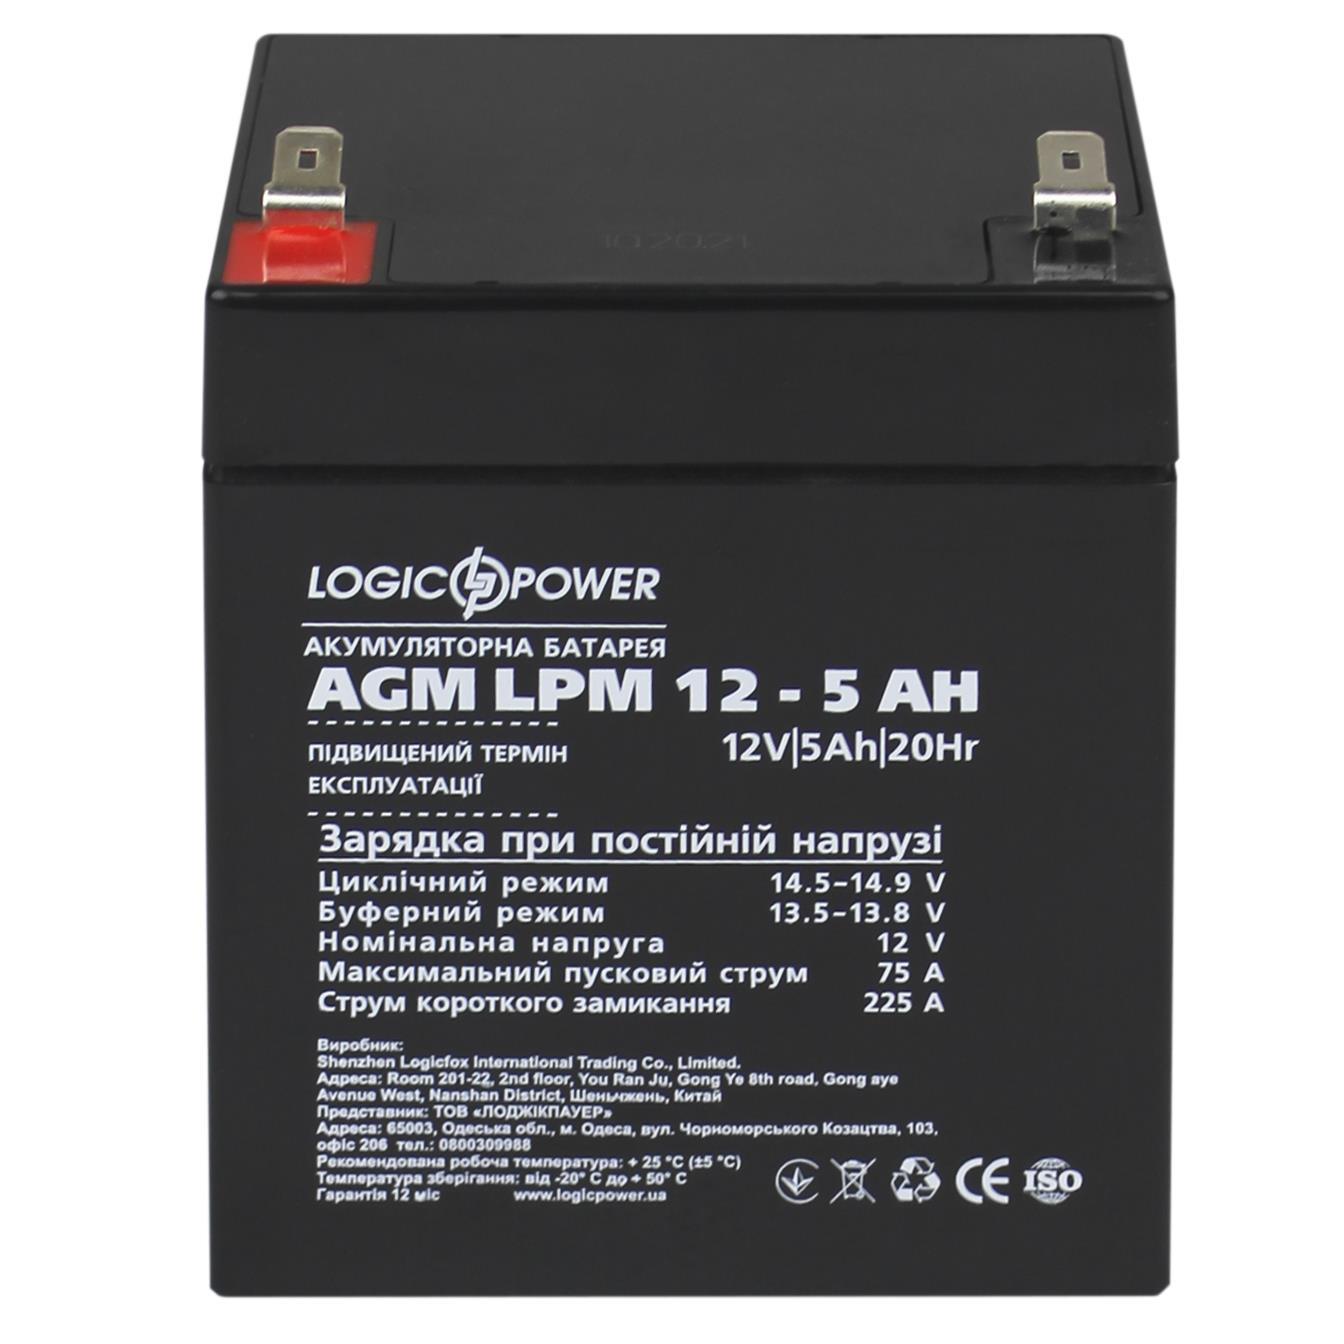 продаём LogicPower AGM LPM 12V - 5 Ah (3861) в Украине - фото 4